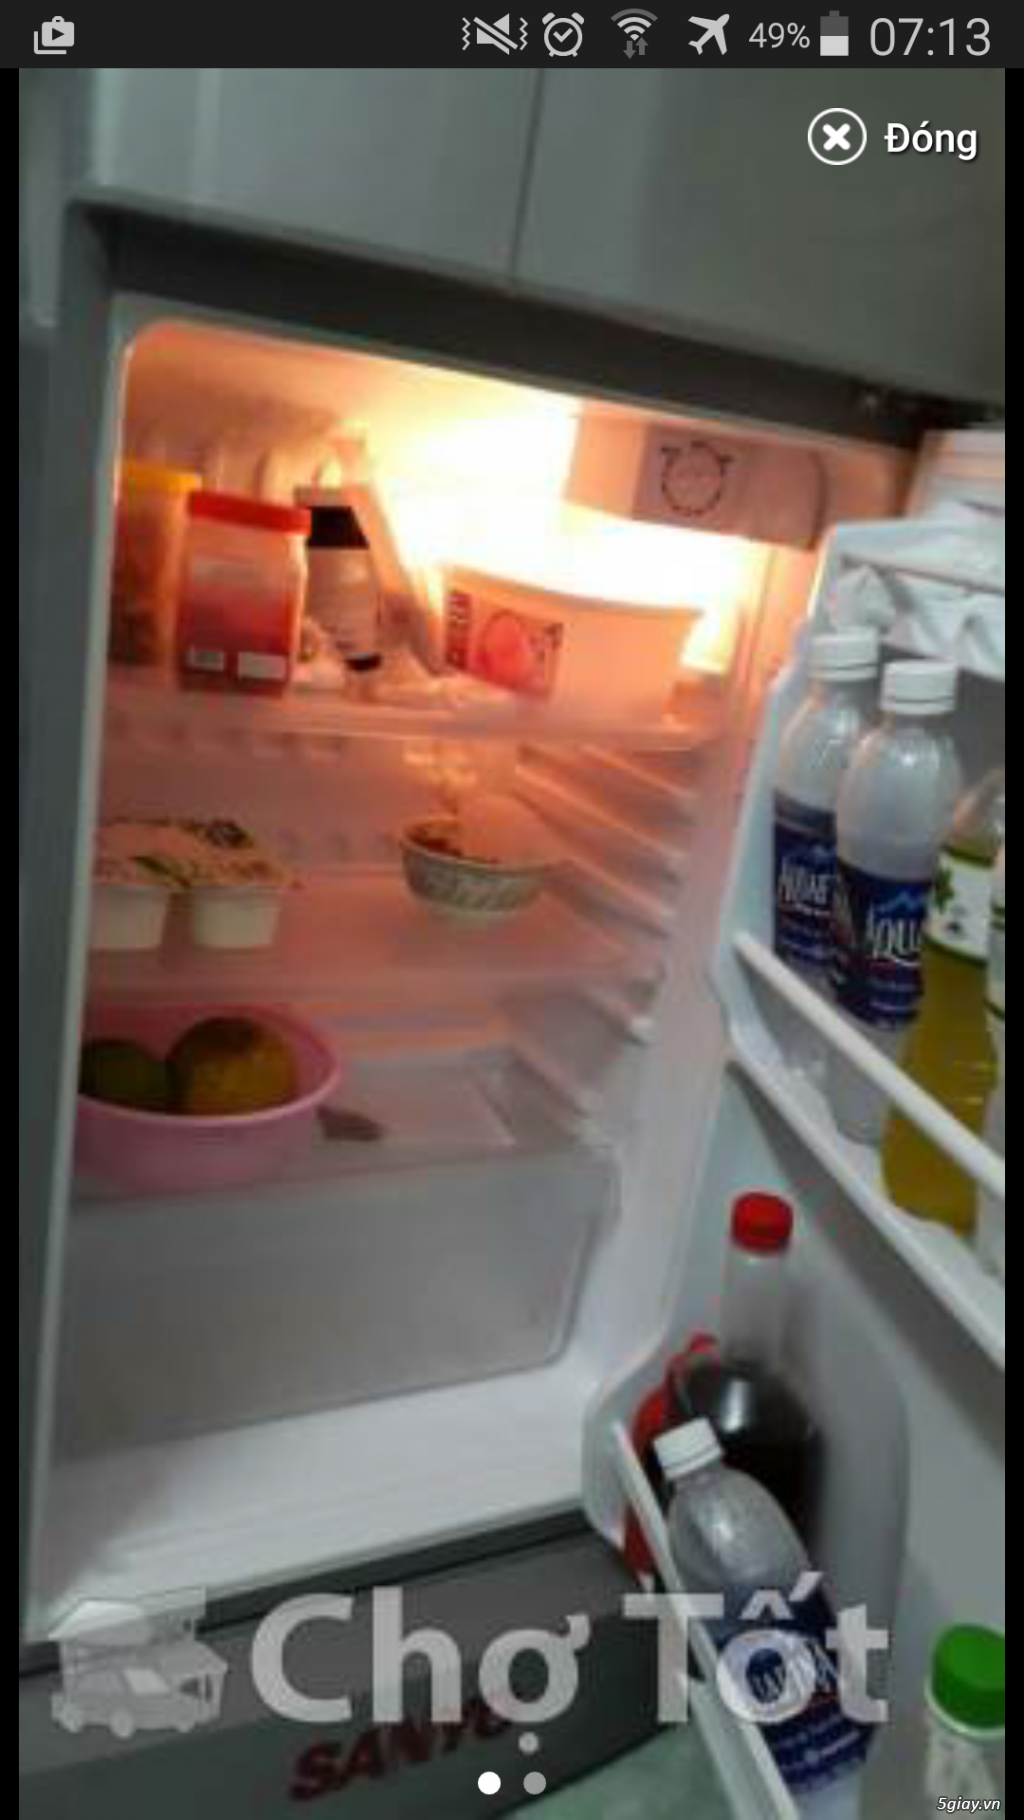 Bán tủ lạnh sanyo 110l - 1